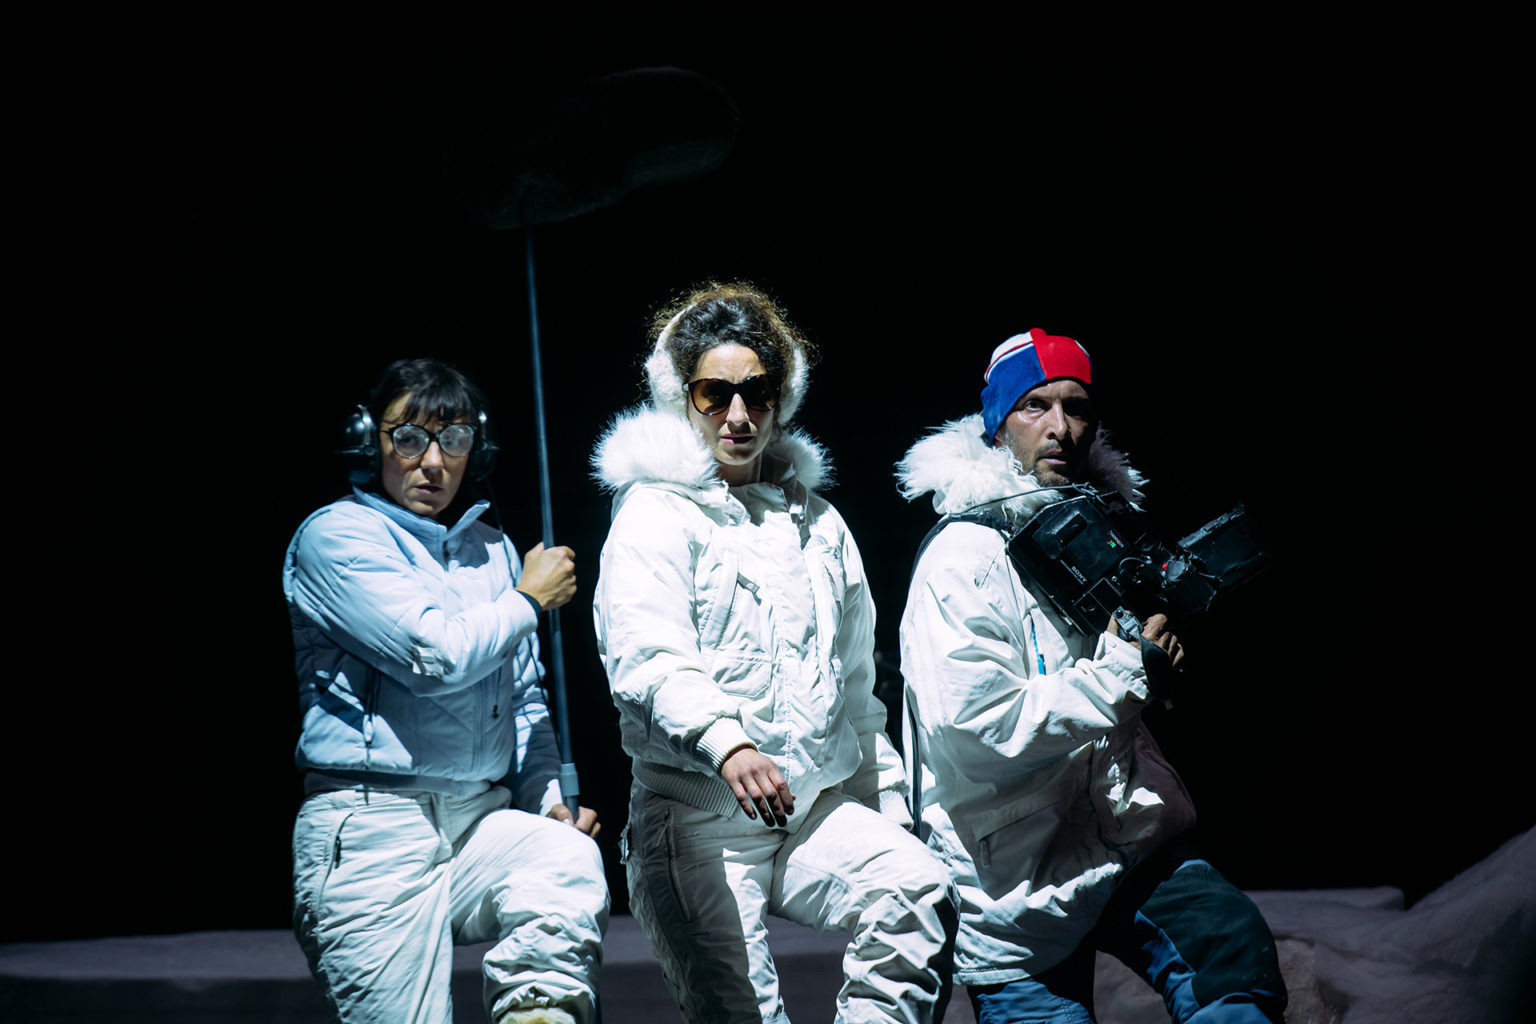 Photos de Julie Tenret, Sicaire Durieux, Sandrine Heyraud sur scène. Ils portent des vêtements et accessoires de ski. ils sont habillés toute en blanc.